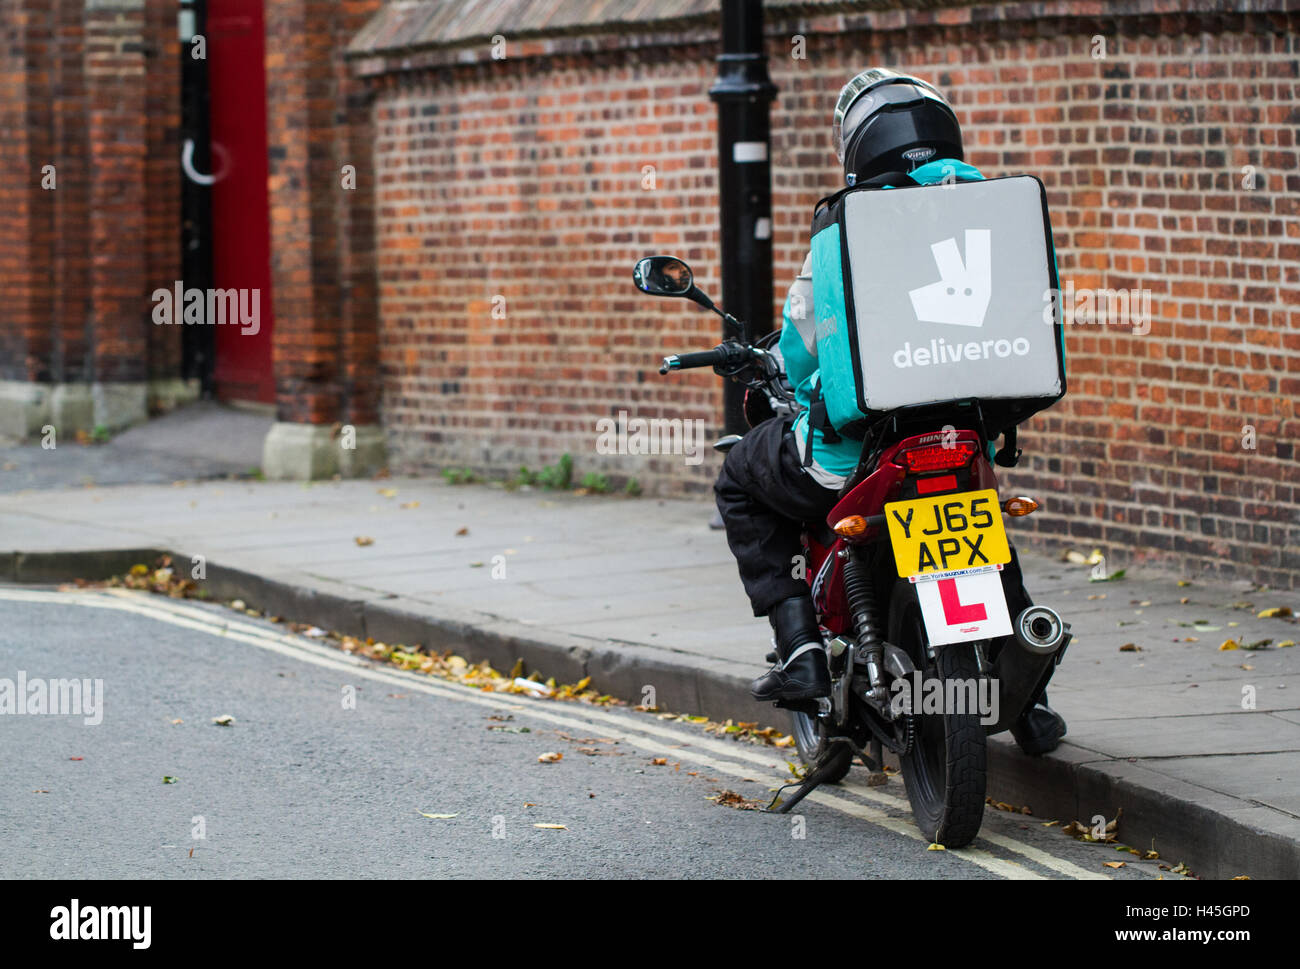 Un deliveroo motocycliste de la plus populaire des aliments chauds et fast food delivery company sans rouler pour un ordre. Banque D'Images